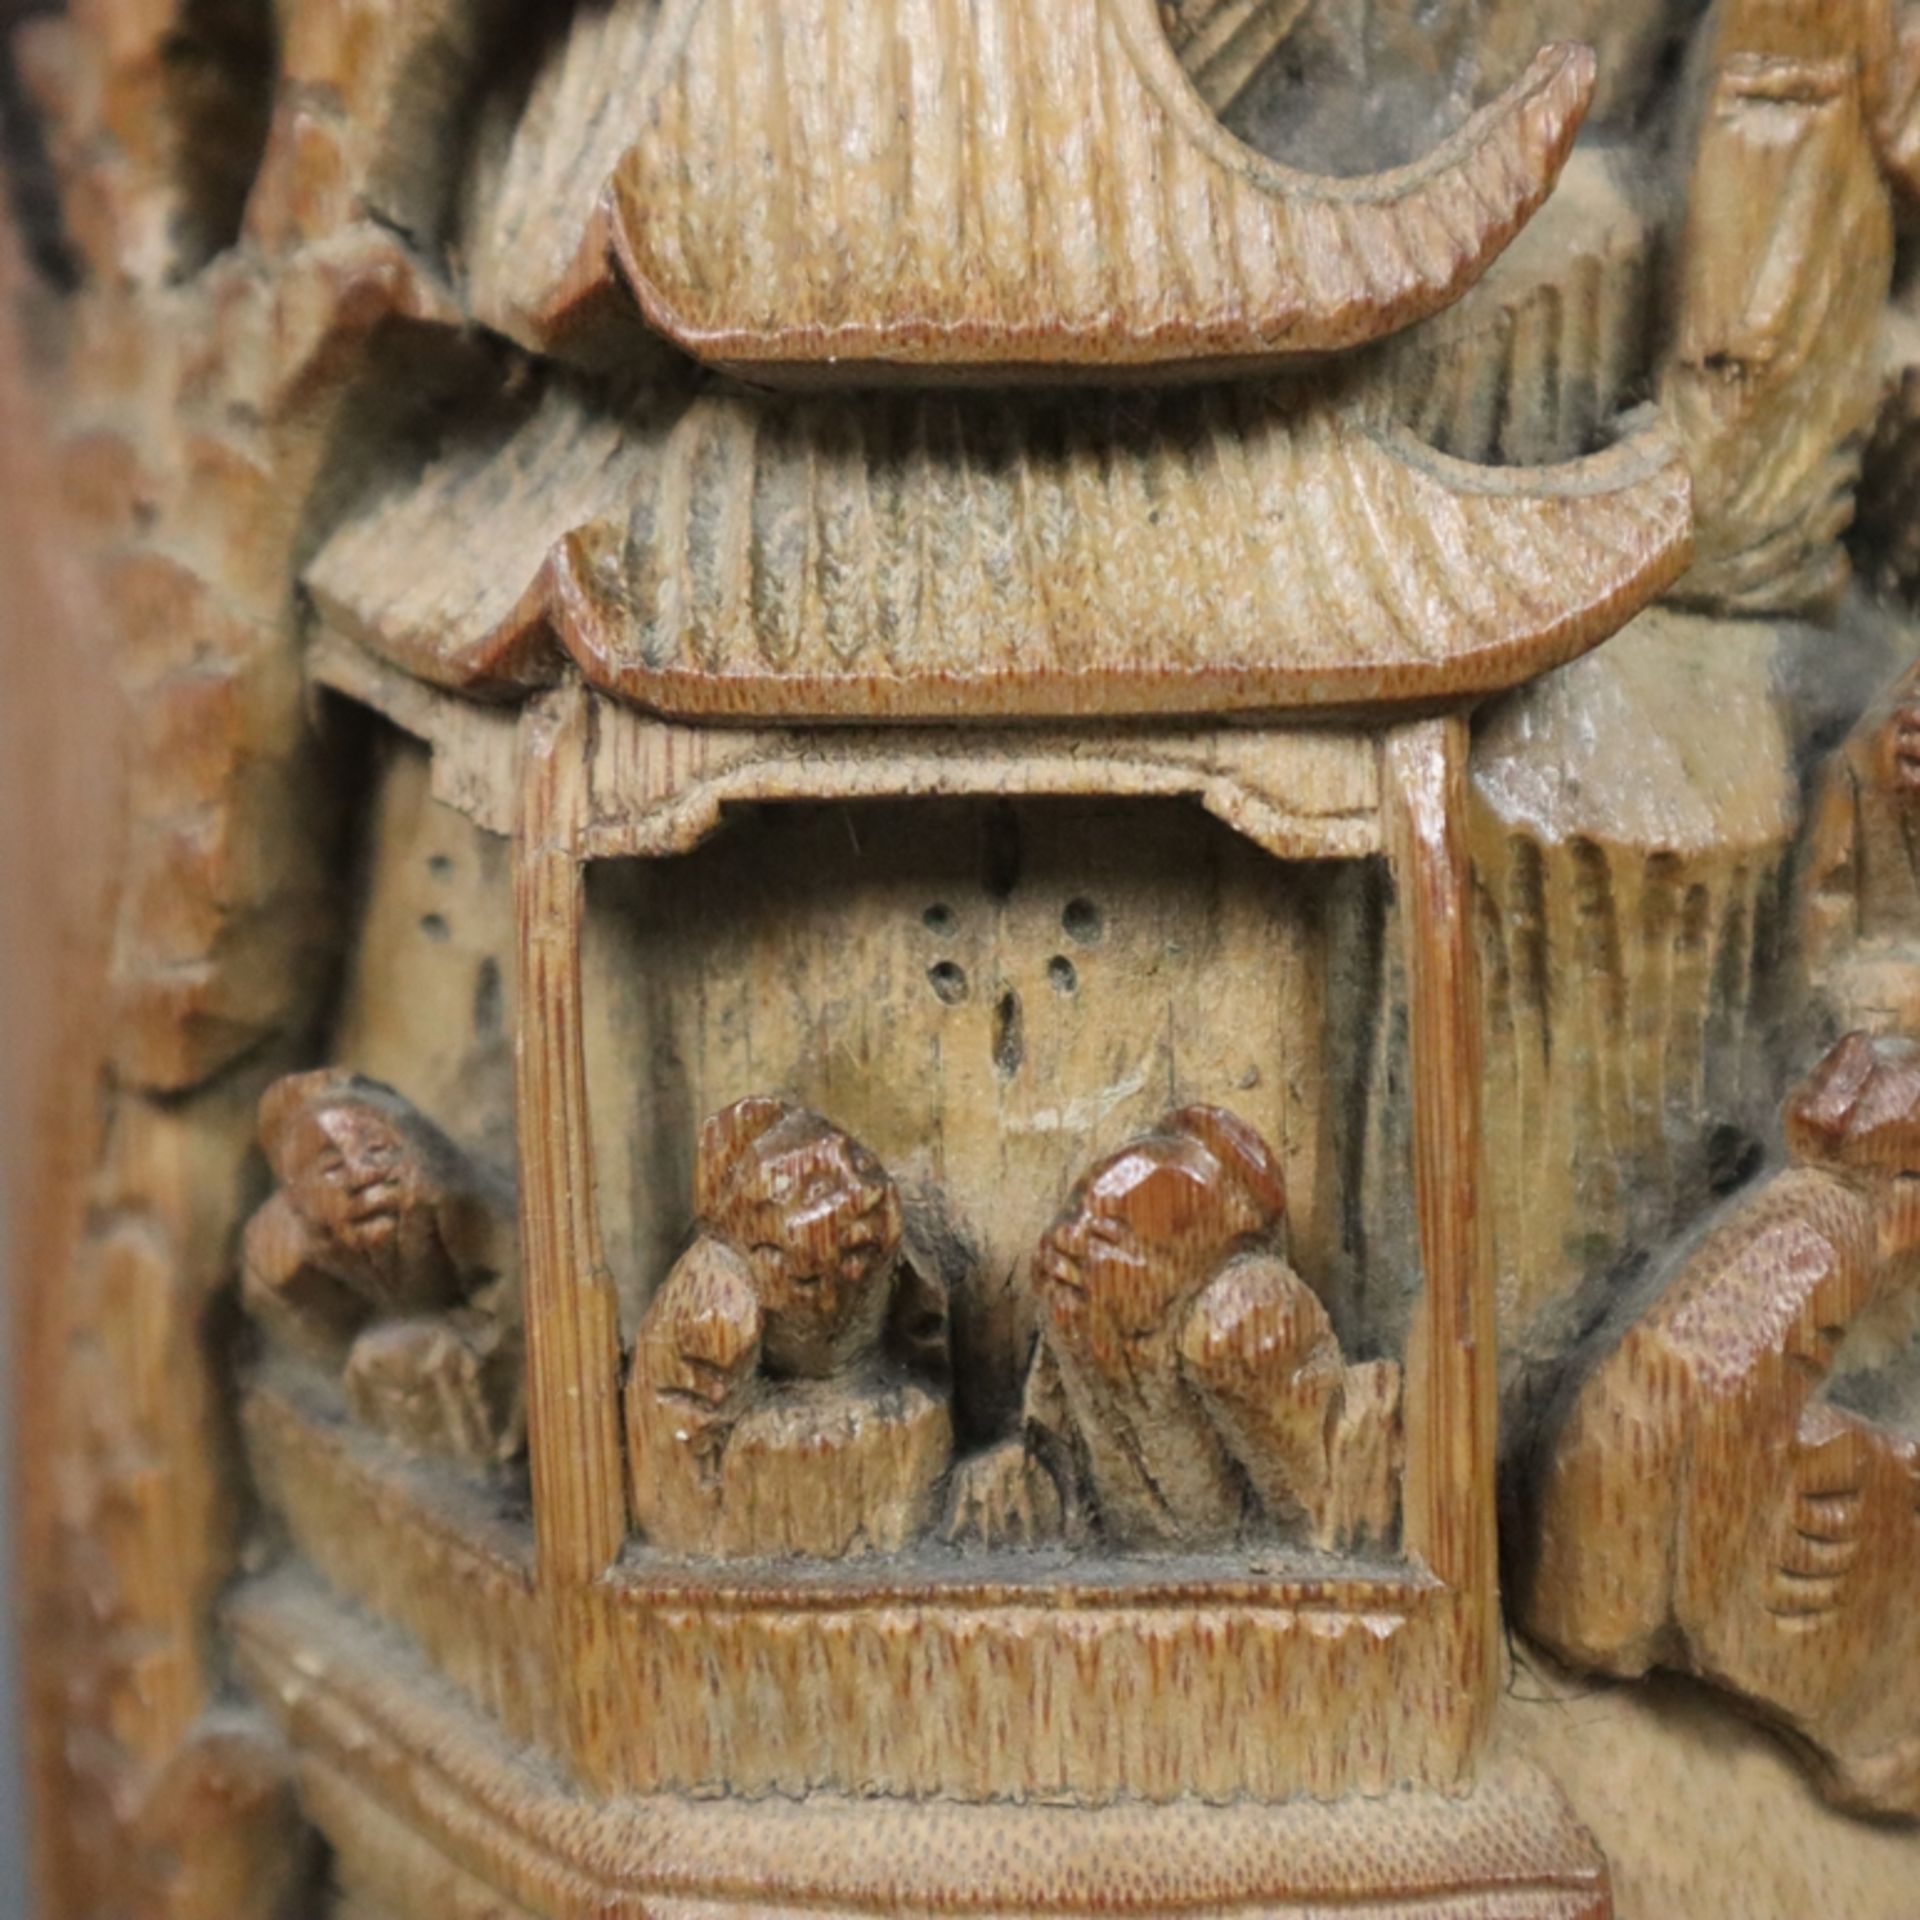 Ein Paar große Pinselhalter - China 1. Hälfte 20. Jh., Bambus, zylindrische Form, beschnitzt, schau - Bild 4 aus 10